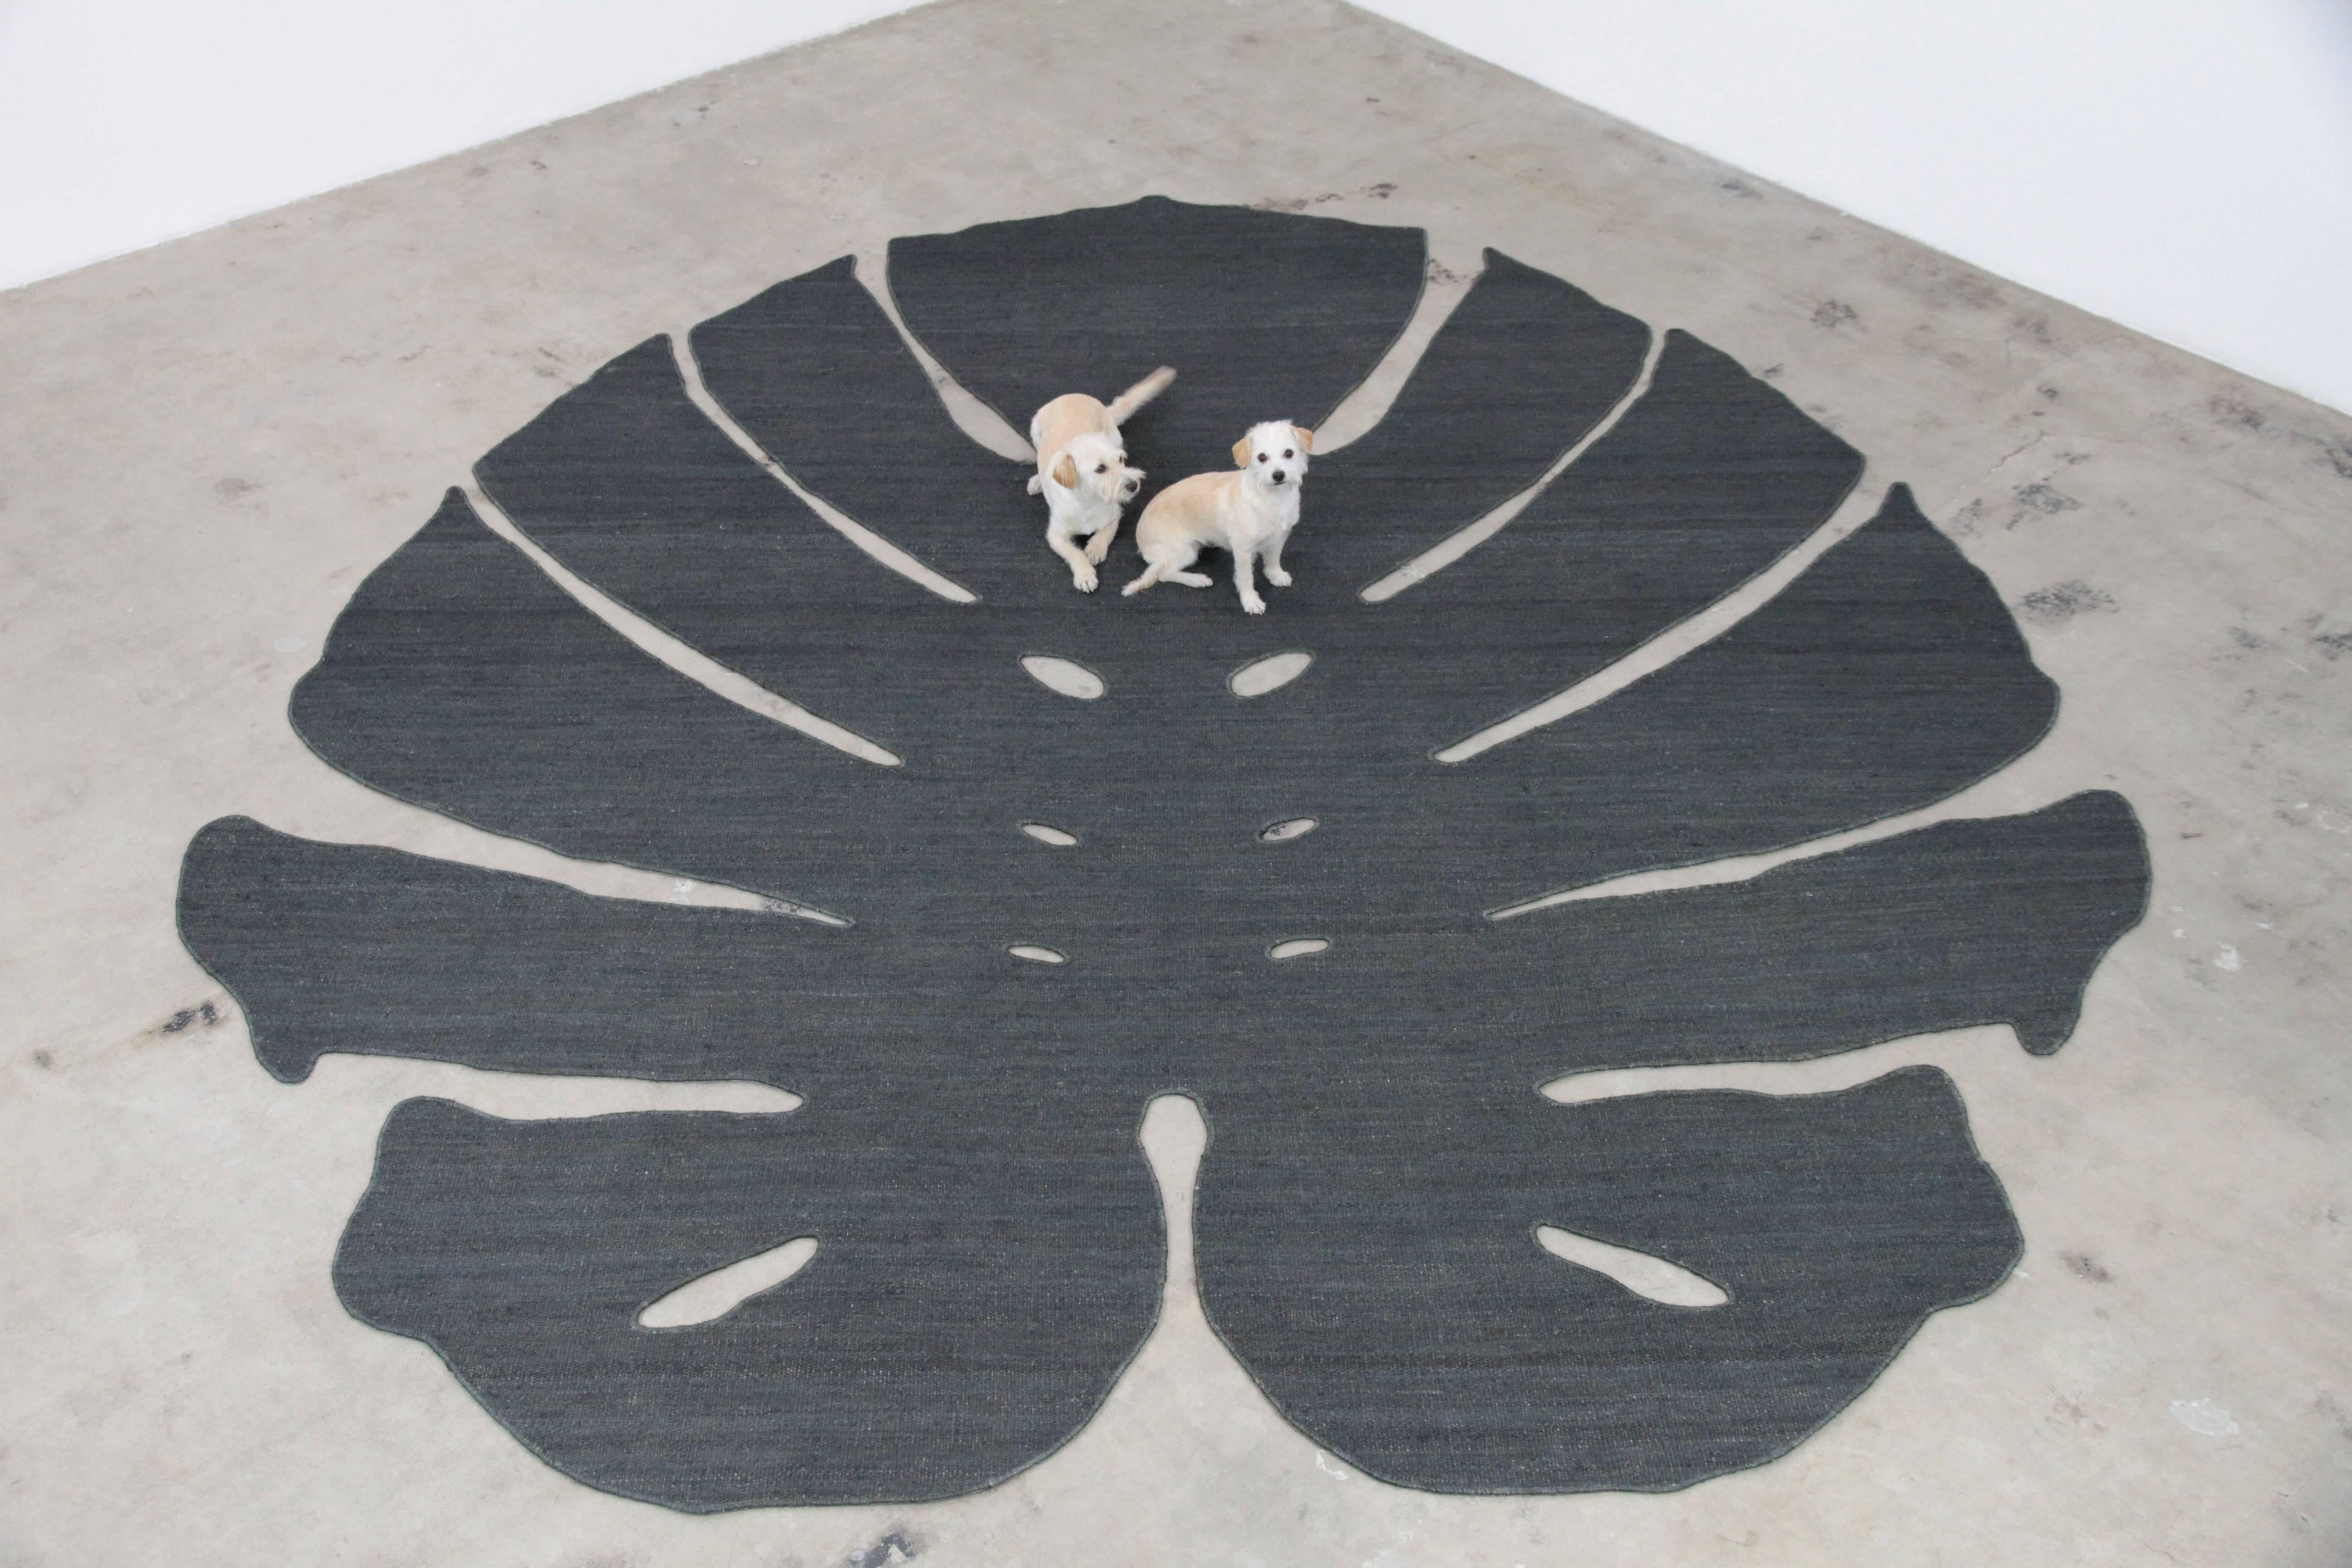 Ce tapis monumental à feuilles de philodendron est tissé à la main en jute gris anthracite. Il est fixé à un pad antidérapant en caoutchouc et peut être placé sur n'importe quelle surface dure à l'aide d'un ruban adhésif pour tapis.
Fabriquée à Los